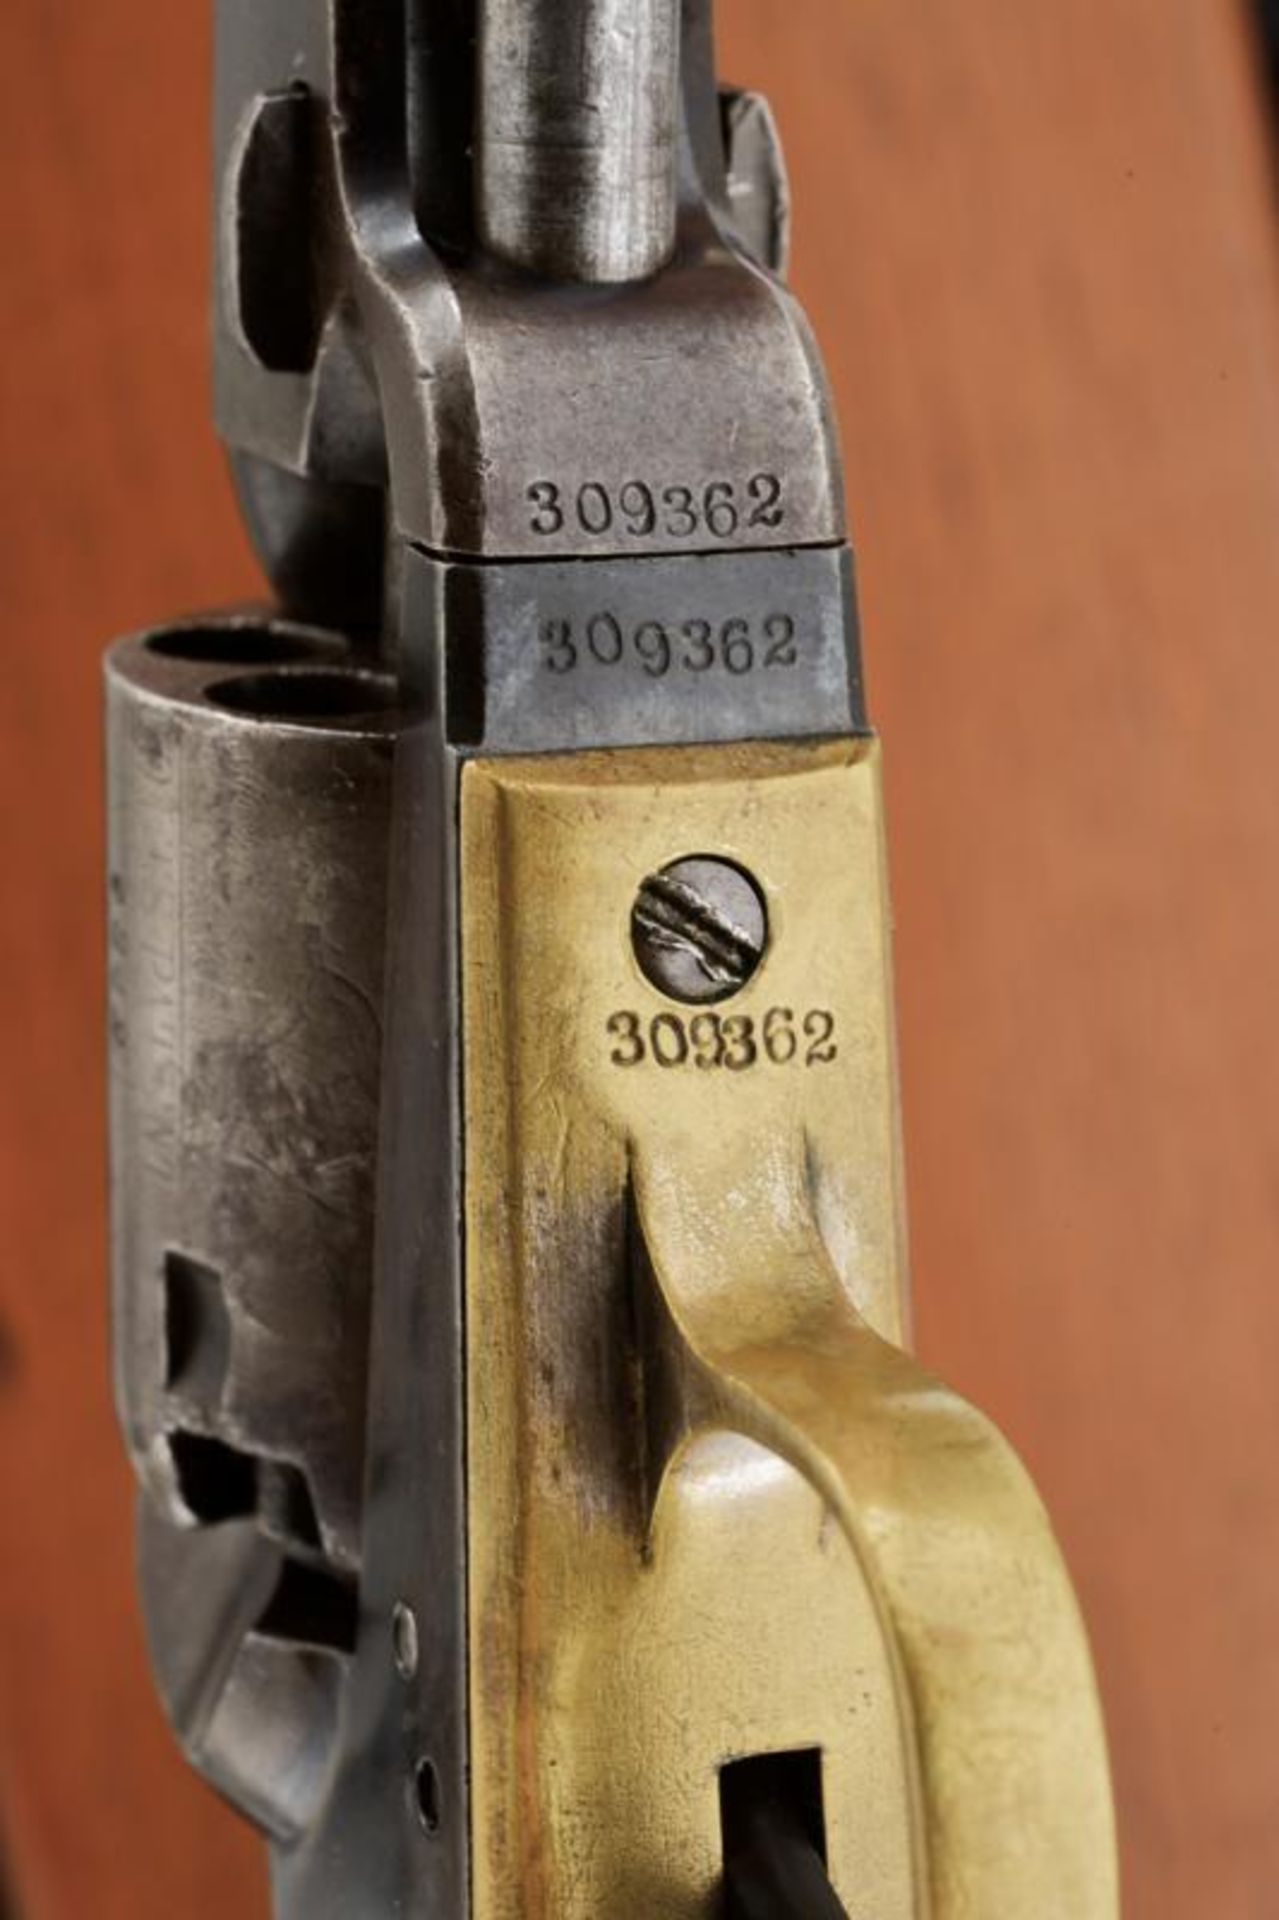 A cased Colt Model 1849 Pocket Revolver - Image 6 of 8